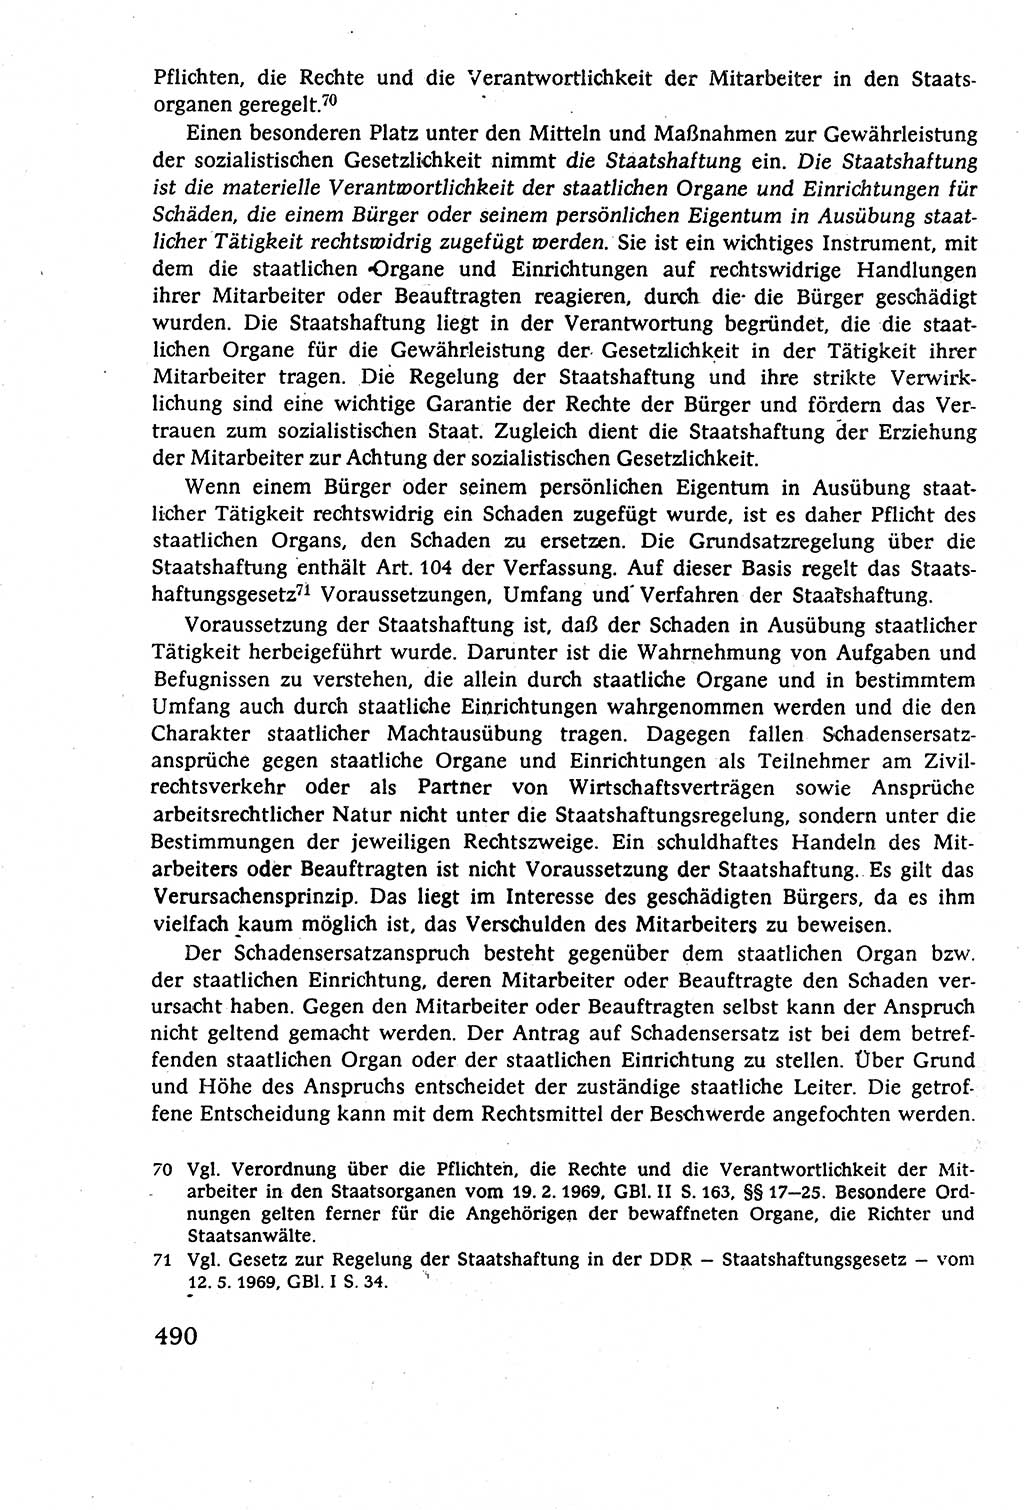 Staatsrecht der DDR (Deutsche Demokratische Republik), Lehrbuch 1977, Seite 490 (St.-R. DDR Lb. 1977, S. 490)